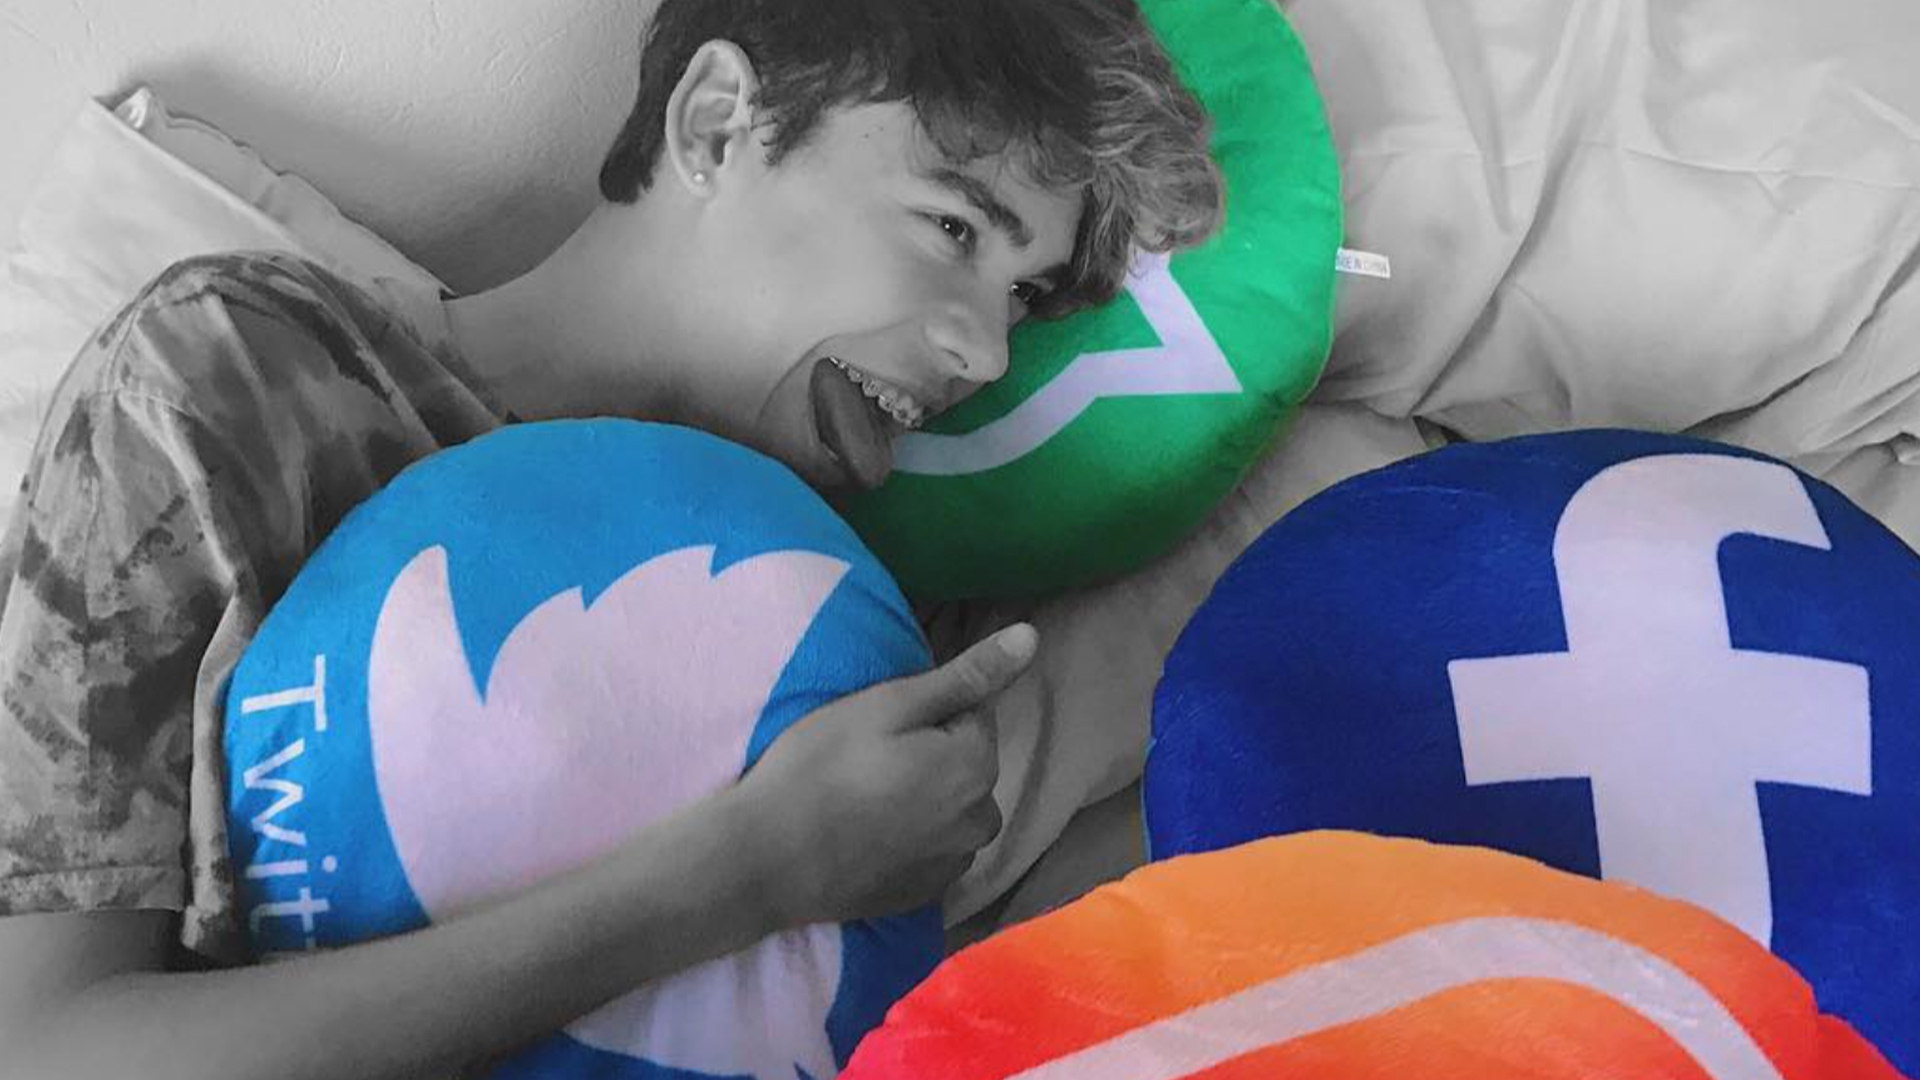 Jayden holds social media themed cushions